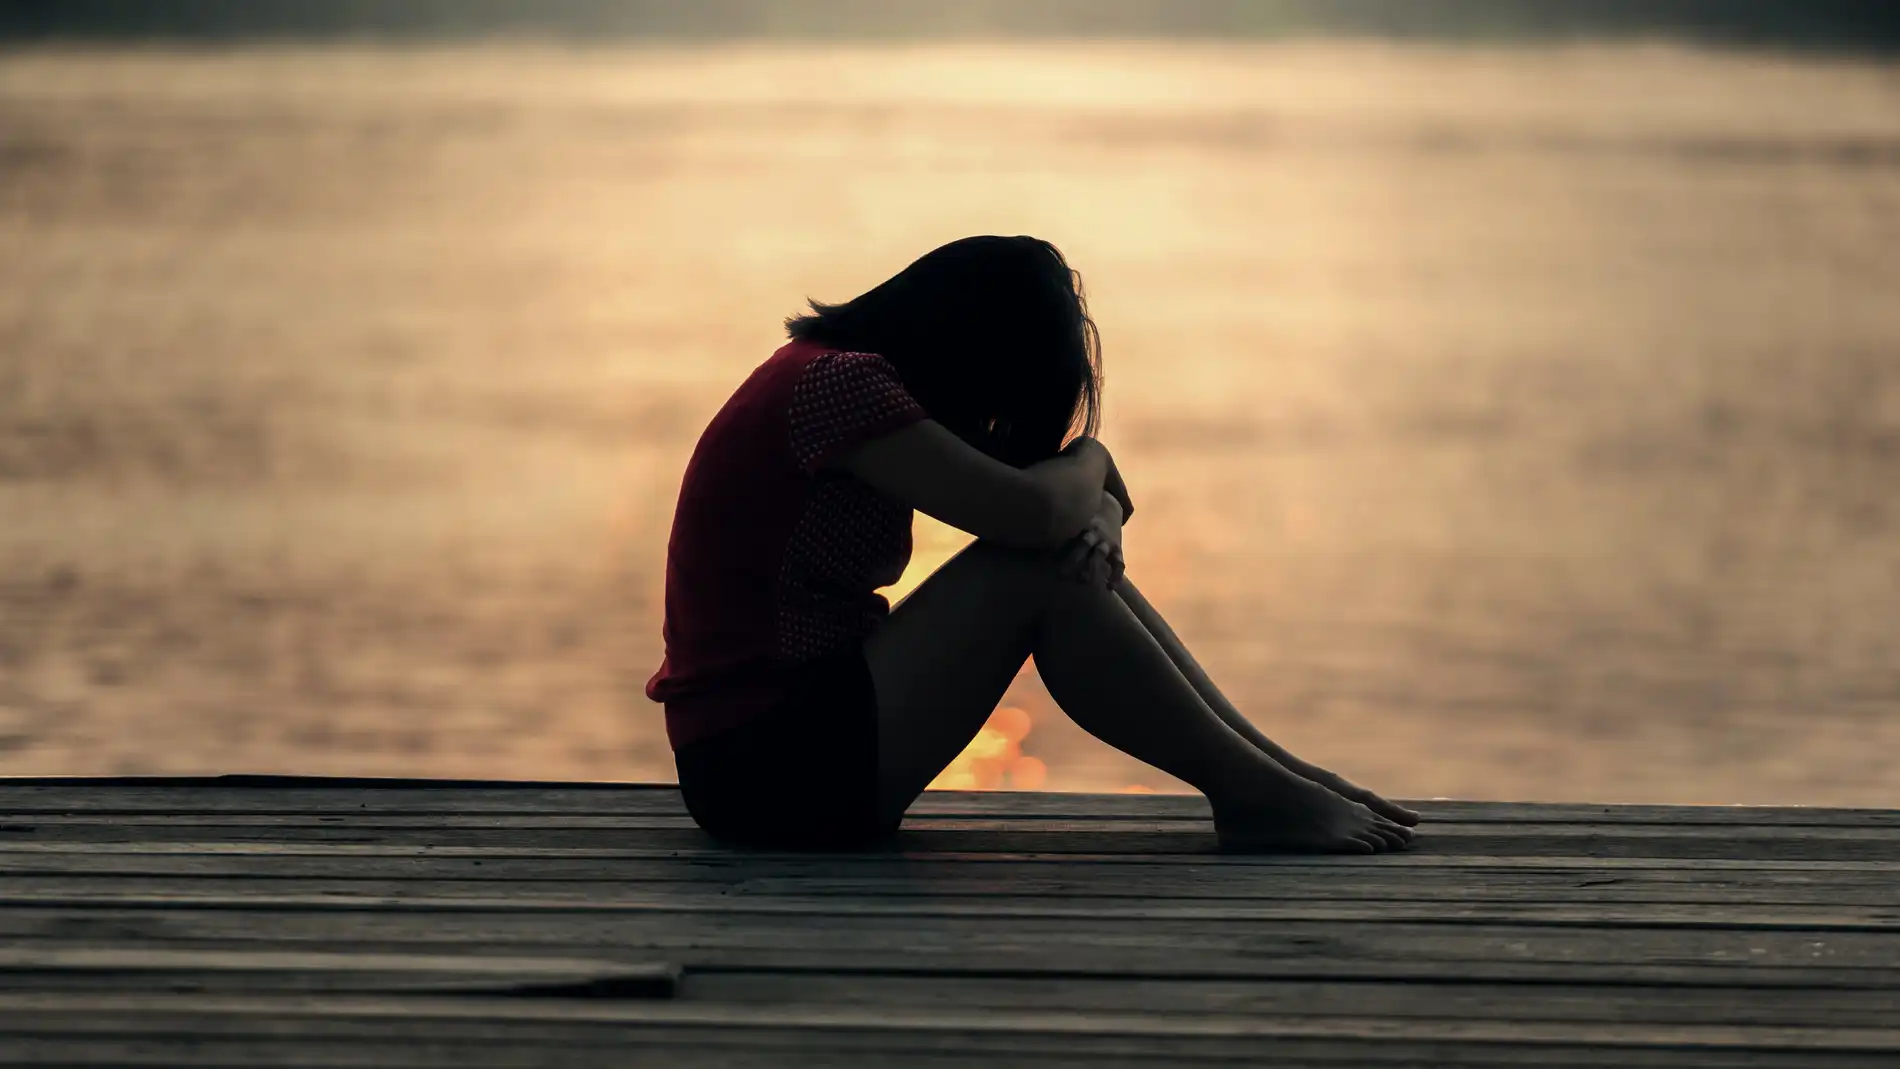 Nueve señales que ayudan a identificar la depresión en menores de edad, según los expertos